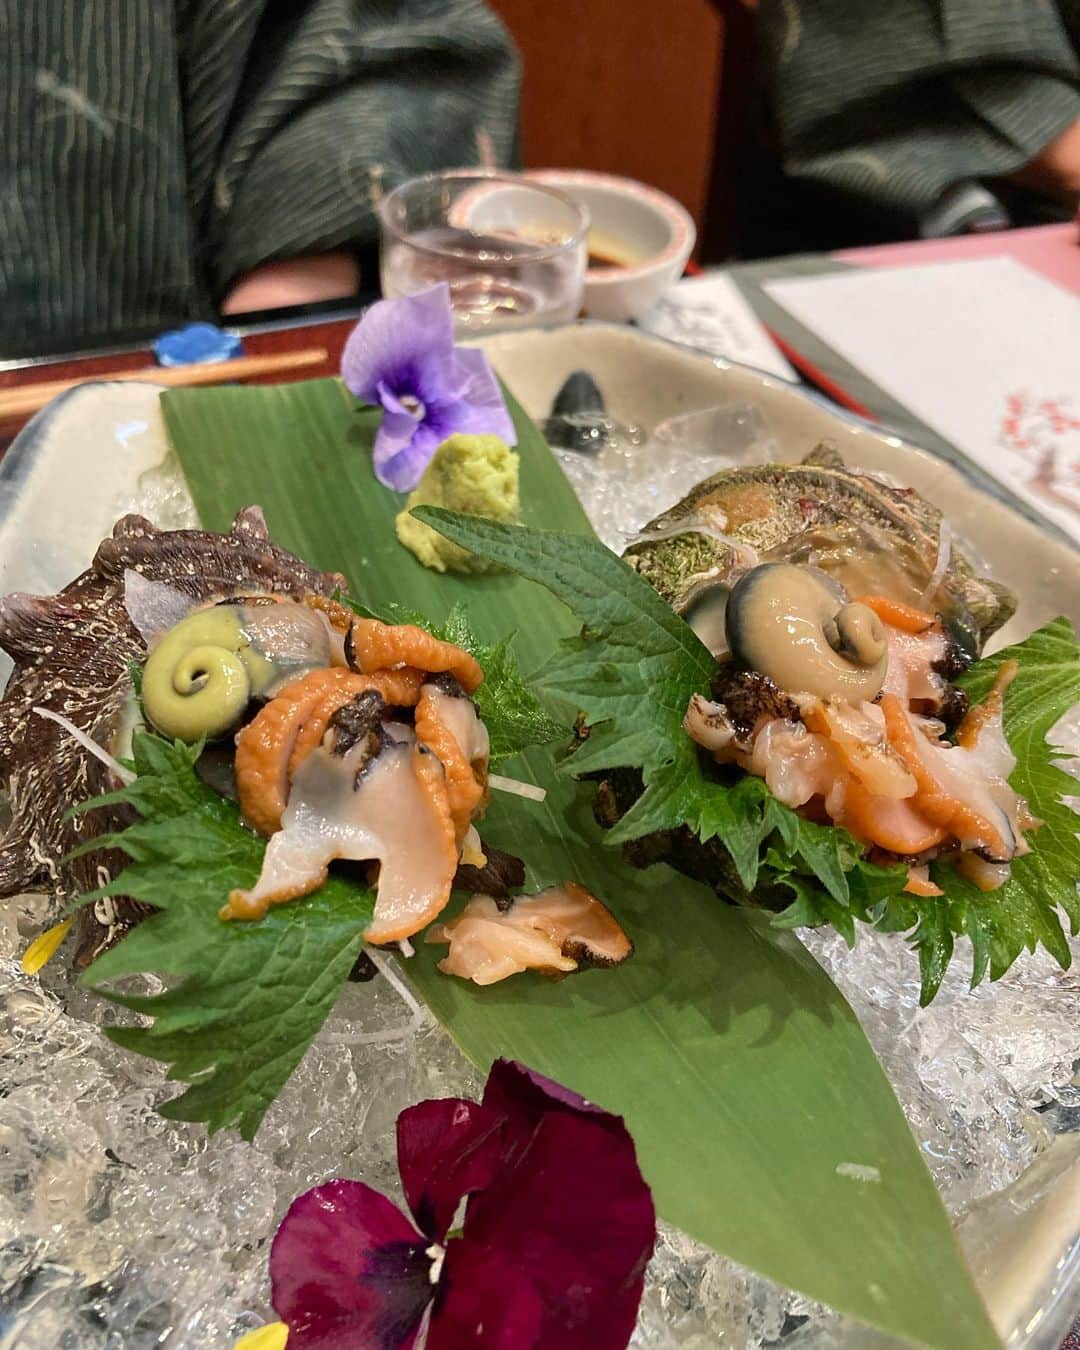 上田愛子さんのインスタグラム写真 - (上田愛子Instagram)「#愛子先生の出雲旅行⛩  とにかくずっと食べてたw 2キロくらい太ったw  写真を美味しくて感動した順に 並べてみました🥢  島根はどのお料理も美味しくて… 本当に最高だった。  お蕎麦もお魚もお肉も 全部美味しくてびっくりした。  それでは長いですが よかったら読んでください🥢  ①出雲大社の中の揚げ物かまぼこ屋さん 揚げたてアゴ入りメンチカツ アゴのすり身を使ったメンチカツ。超めずらしい。 東京にはあまりない味。サックサクの揚げたてで150円くらいだし衝撃の美味さだった！🐟  ②手打ち十割蕎麦　出雲そば 砂屋さんの3色出雲蕎麦 美味すぎた。数々の蕎麦を食べまくってる私が言うのだから間違いない。甘めの濃いめのお出汁をかけて、好きな薬味を乗っけて頂くお蕎麦。食べ飽きないし、出汁が美味すぎて飲んじゃえるくらいw 十割蕎麦はポソポソになりがちなのに、 しっとりと柔らかく蕎麦の香りは強くて最高だった。 40分並んだ甲斐がありました。  ③ のどぐろ丼　しじみ汁セット 出雲大社目の前の新世界という小さなお店 島根ののどぐろは安くて脂乗ってて美味しいと聞いたので、のどぐろ大好きGALとしては食べるしかない！！ ほんまに脂乗っててとろけた… 量は少なめだけど、しじみ汁ついて1400円。 コスパ良き。あとこの店のアサヒ生ビールが冷えてて、樽の掃除ちゃんとしてるからなのか？ とにかく死ぬほど美味かったw 島根は生ビールがアサヒスーパードライばかりなのも推せる。まじ最高！ 近くの湖で取れたしじみは出汁と旨みが凄い。 身も大きくて最高！肝臓にも良い！  ④のどぐろ丼と同じ店で食べた生牡蠣 牡蠣の刺青入ってるくらい牡蠣好きだから食べないわけにはいかぬ。1000円とコスパ良くはないが、なんかめちゃくちゃ美味かった… 大きくてサッパリとして臭みがなく、 でも最後はクリーミー！ 生牡蠣もキーンと冷えて身はプリプリ！ 食べて良かった♡  ⑤⑥お宿 長楽園の夕食 真鱈と雲子の茶碗蒸し 無類の白子好きなわたしは雲子が大好き。 さらにそれを茶碗蒸しに入れてるなんてうまいに決まってる！！黒胡椒がきいた甘めの出汁と雲子のクリーミーさ、お魚の旨みが最高のハーモニーでした(語彙きもいね)  ⑦ お宿 長楽園の夕食 金目鯛のしゃぶしゃぶ 二日目のお夕食ででてきた、しゃぶしゃぶ。 脂の乗った金目鯛を熱々の出汁にしゃぶしゃぶして おネギと一緒に自家製のゴマだれにつけて頂く… うま！？うめえ！！ なんだ！？なんでこんな美味いんだ！？ 出汁が美味すぎて全部飲み干したよw アゴだしと金目鯛の出汁に甘め醤油の味かな？ とにかく金目鯛はプリプリだし、 出汁飲み干すくらい美味しかった。。  ⑧お宿 長楽園の夕食 サザエのお刺身 妹が頼んだ、別料金のサザエ刺身。 私たち姉妹は貝がめちゃくちゃ好きだ。笑 見て！わかる？サザエの肝の色がすごいの。 新鮮すぎて黄緑色っぽいの！ 身はコリコリシコシコで最高に美味しかった追加料金1500円くらいだったかな？ とにかく何もかも安くて美味しい。 海鮮が美味しくて幸せです。  ⑨ お宿 長楽園の夕食 これも2日目の締めのご飯。 雲丹の釜飯。 地元の海で育った雲丹の炊き込みご飯。 目の前で釜飯で炊き上げてくれます🍚 炊き立てを食べれる幸せ。 薬味に小口ネギと島根県産のエゴマを混ぜてあって、 エゴマのプチプチとした食感とエゴマの風味が しっかり味の雲丹と素晴らしい味付けでした。 おかわりしたかった。  ⑩ お宿 長楽園の夕食 真鯛のカブト煮 甘めの味付けが最高に美味しかった！ 脂が乗っていて、辛口の島根県産の日本酒と最高に合う。 頬の身が特にプリプリしていて味が濃くて美味しかった。。パパが顔のままだと食べれないから、 身だけ取ってあげた優しいわたしw  以上です🥢🥢🥢 ぶっちゃけ旅館のお料理はお安めのツアーのだし お食事目当てじゃないから全然期待していなかったの。  でも二日間とも朝も夜もめちゃくちゃ美味しかった。 まじで感動した。 お料理を愛を込めて丁寧に作っているのがわかる。 素朴だけど美味しくて素材の旨味を感じる味付け。  派手さは全くないのだけど 口にすると、めっちゃくちゃ美味しい。 出汁やちょっと甘めの味付けが最高だ。 家族4人感動して、 めちゃくちゃな勢いで食べた。笑  お米も最高に美味しい。 お水が綺麗だからか地酒も最高。 物価も安くて、どんなものも安くて美味しくて とてもコスパが良かった。  島根県、最高すぎます。 またぜったい来たい！  今回泊まったお宿は 玉造温泉の長楽園というお宿だよ♨️  露天風呂も温泉も接客もお料理も 全て最高でした。ありがとうございました。  #愛子先生の出雲旅行⛩ まだまだ続くよw  #島根県 #島根旅行 #島根グルメ #島根観光 #出雲 #出雲大社 #出雲グルメ #出雲ランチ #出雲旅行 #出雲大社グルメ #出雲そば #出雲蕎麦 #玉造温泉 #玉造温泉グルメ #玉造温泉♨️ #長楽園」3月13日 10時31分 - aikosenseidayo